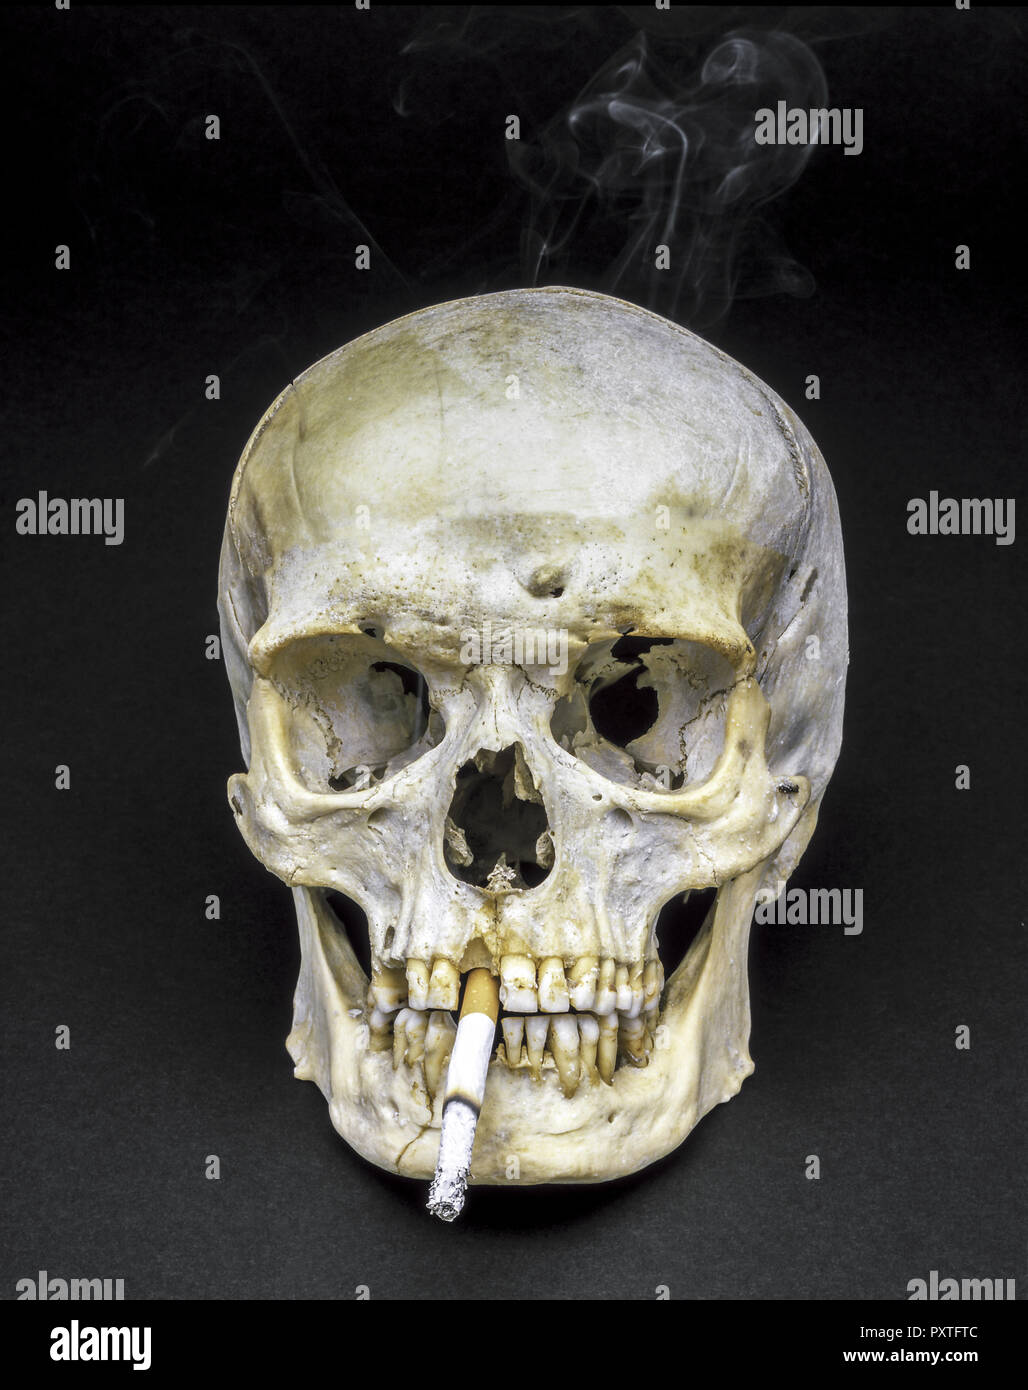 Totenschädel raucht eine Zigarette, Skull smoking a cigarette, Depending, Addiction, Danger, Endangered, Hazard, Hazardous, Health, Risks, Harmful, To Stock Photo